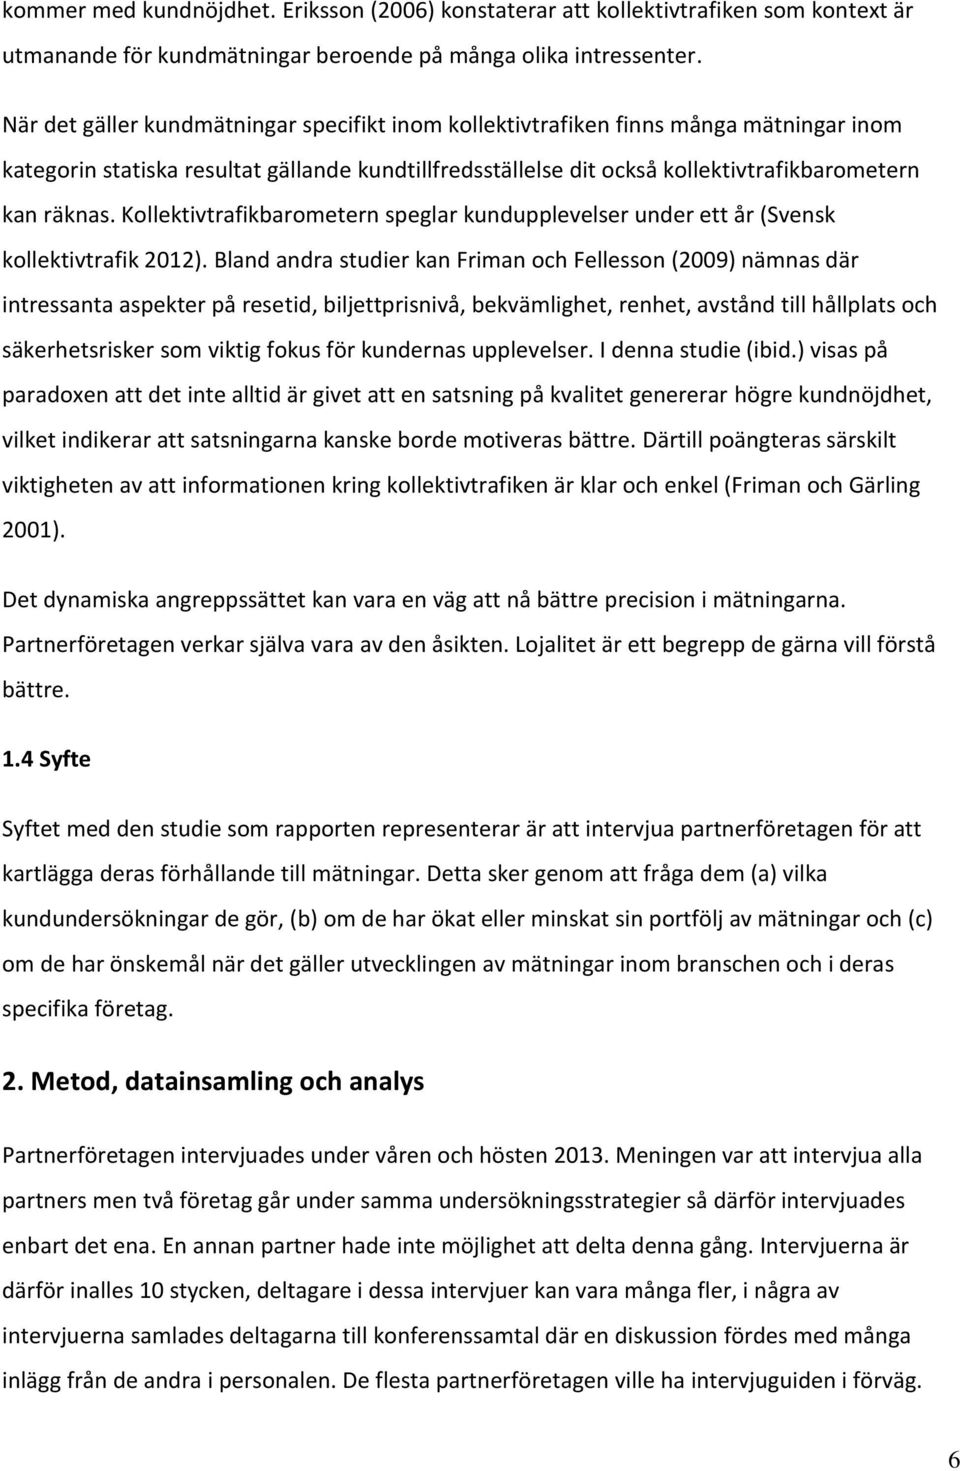 Kollektivtrafikbarometern speglar kundupplevelser under ett år (Svensk kollektivtrafik 2012).